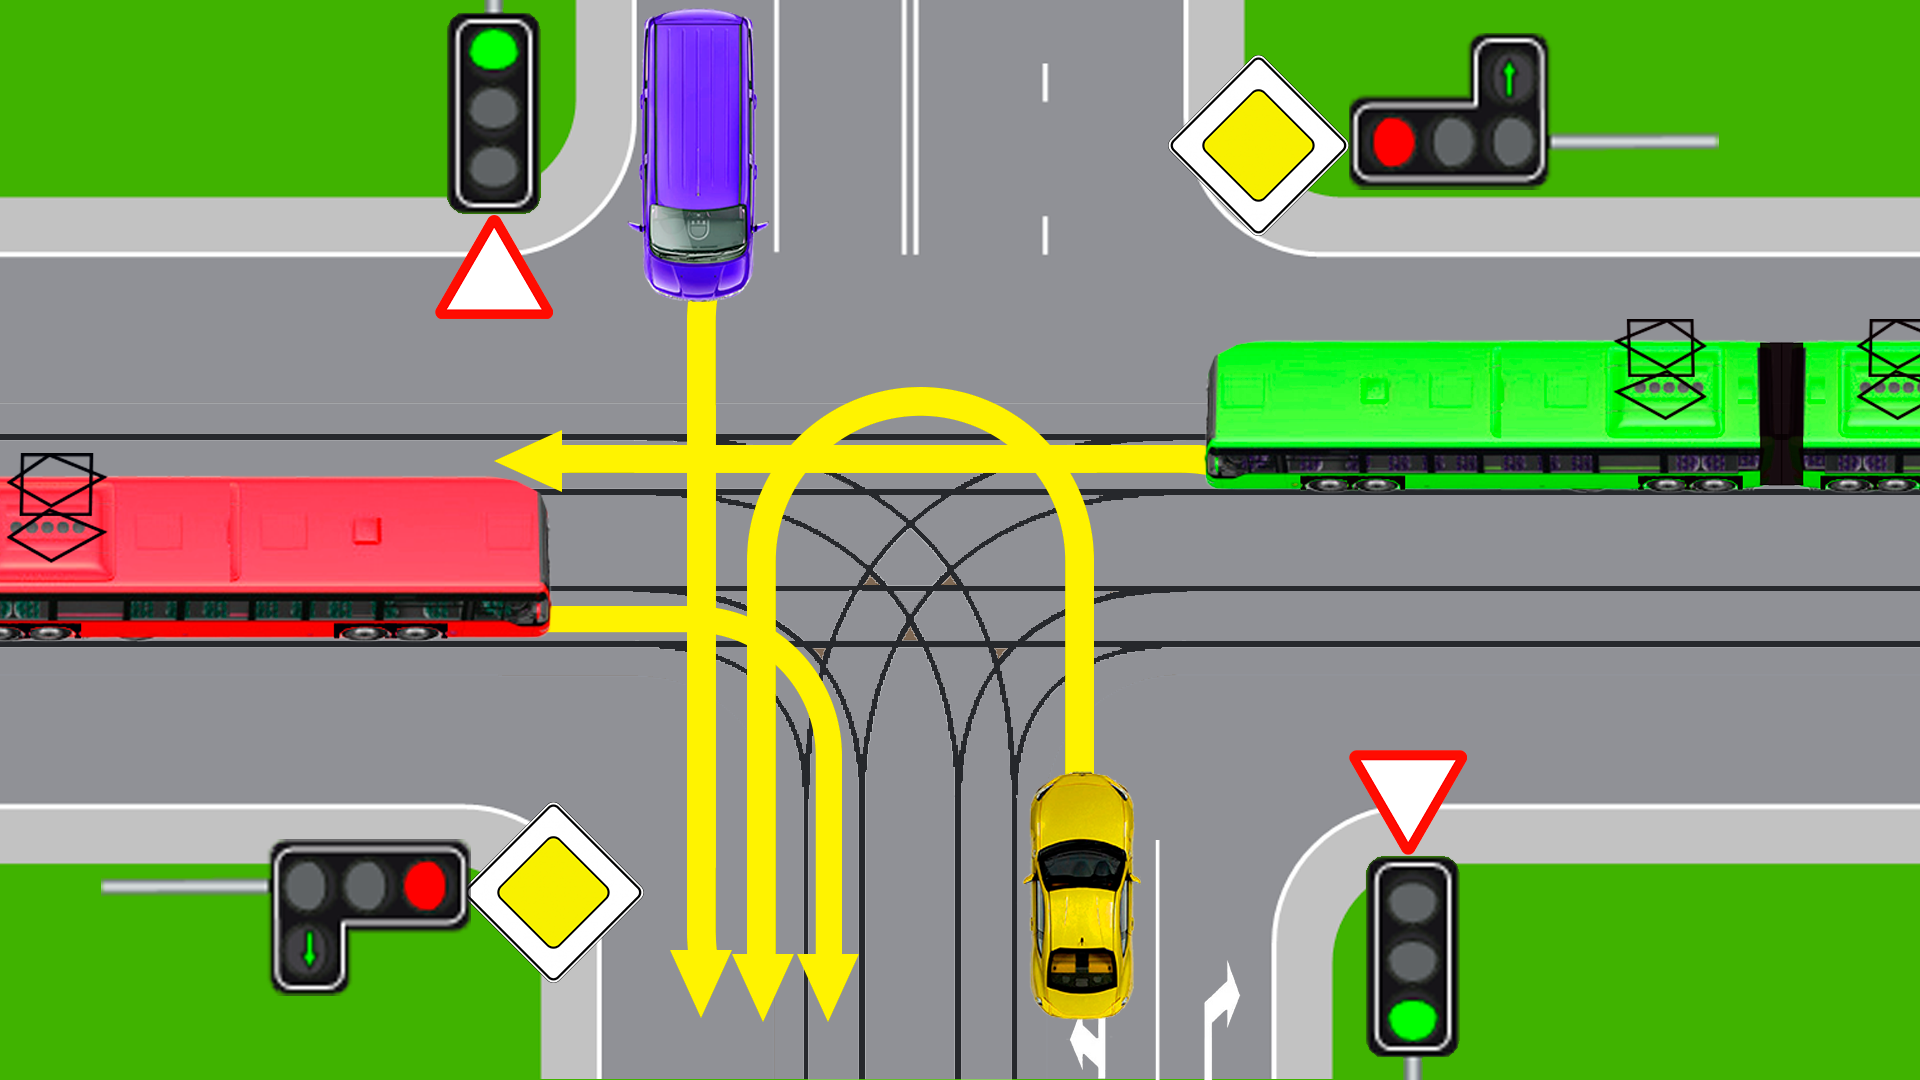 Зеленый автомобиль проедет перекресток. Трамвай на перекрестке. Ктотпроедит перекресток. Трамвай имеет преимущество. Кто проедет перекресток 1.